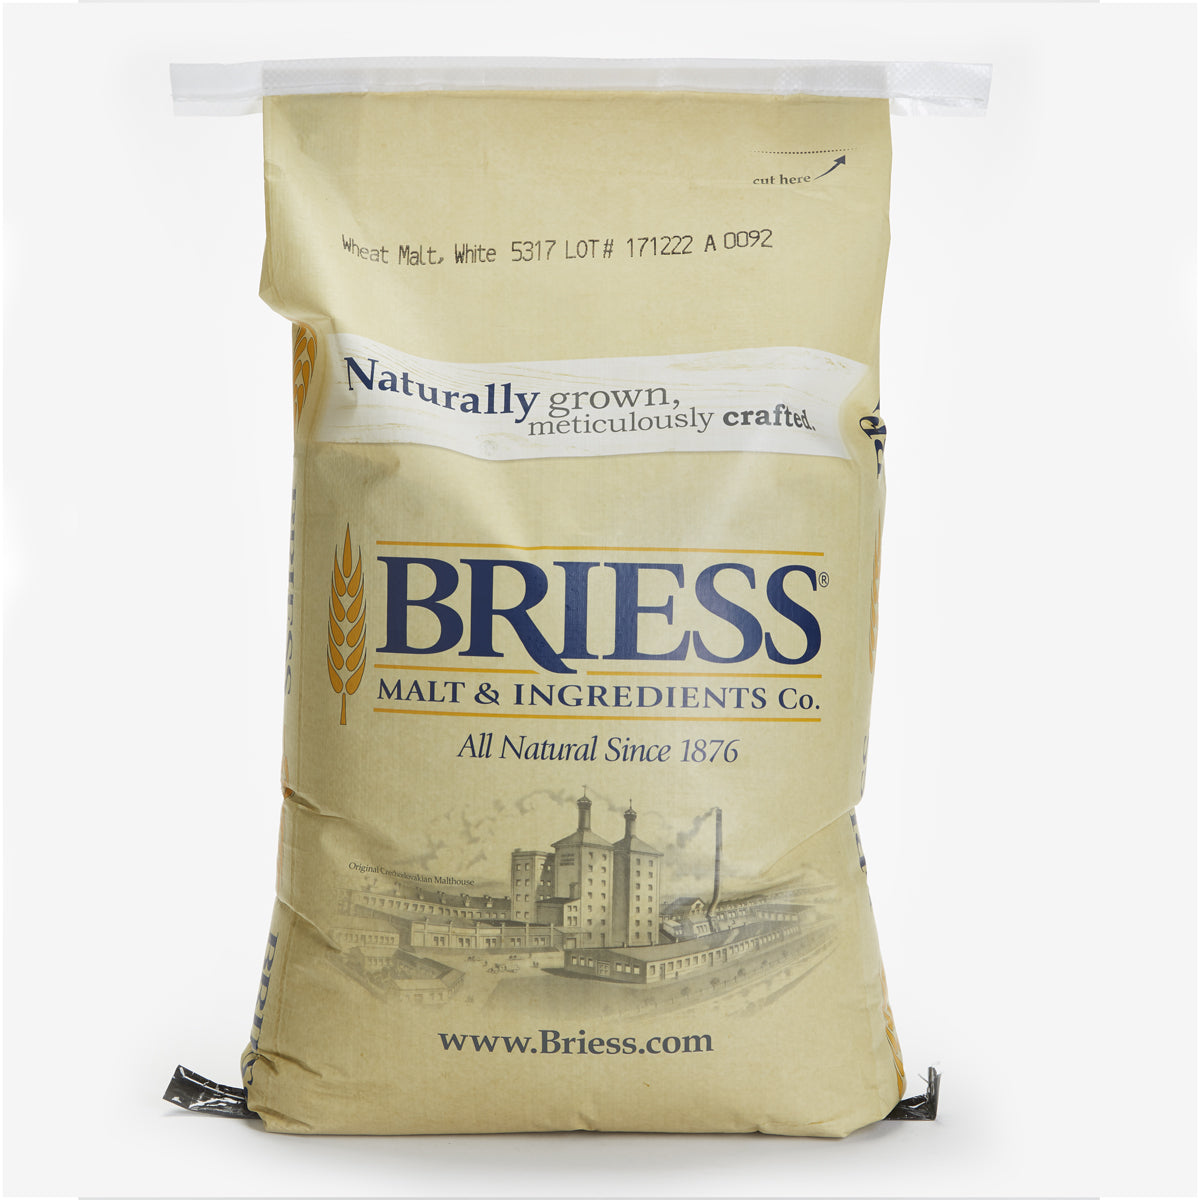 Briess Wheat Malt White